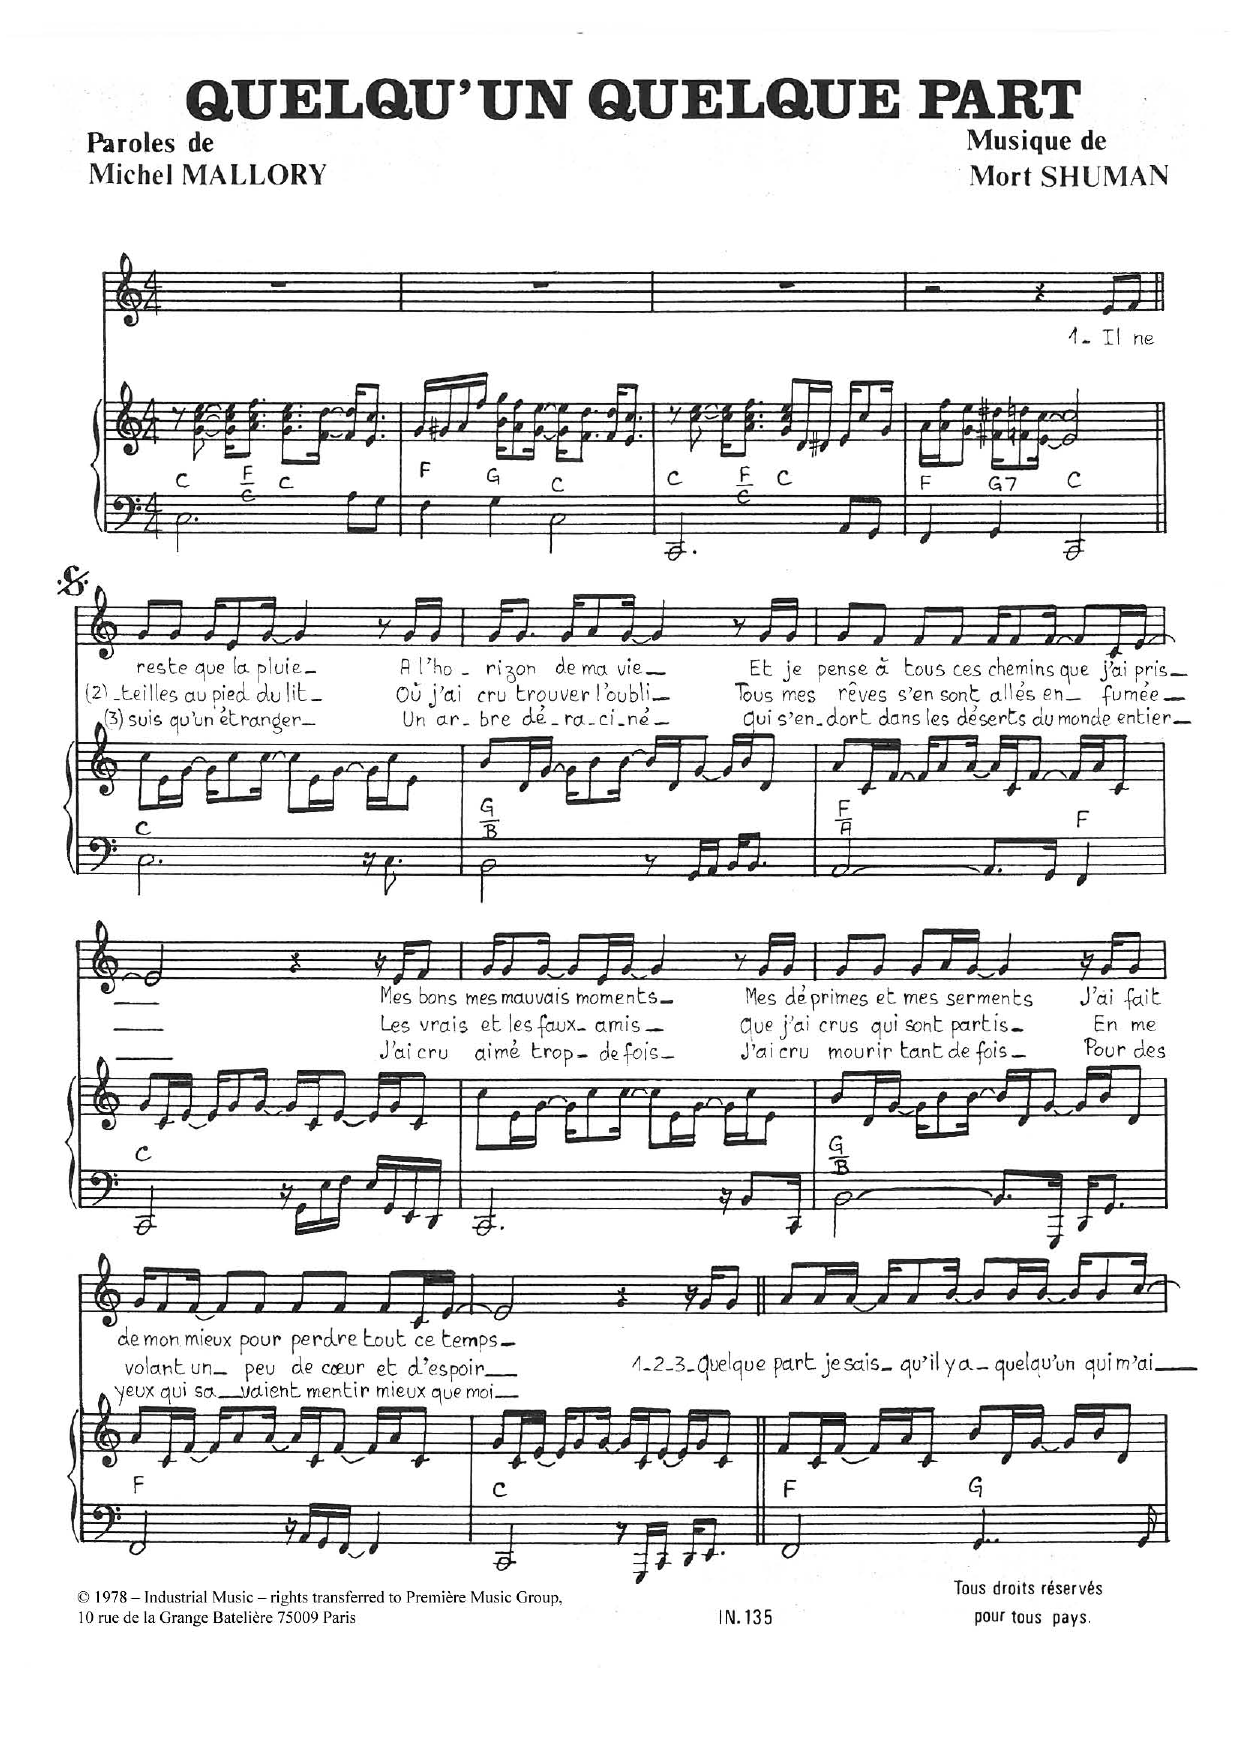 Mort Shuman Quelqu'un Quelque Part Sheet Music Notes & Chords for Piano & Vocal - Download or Print PDF